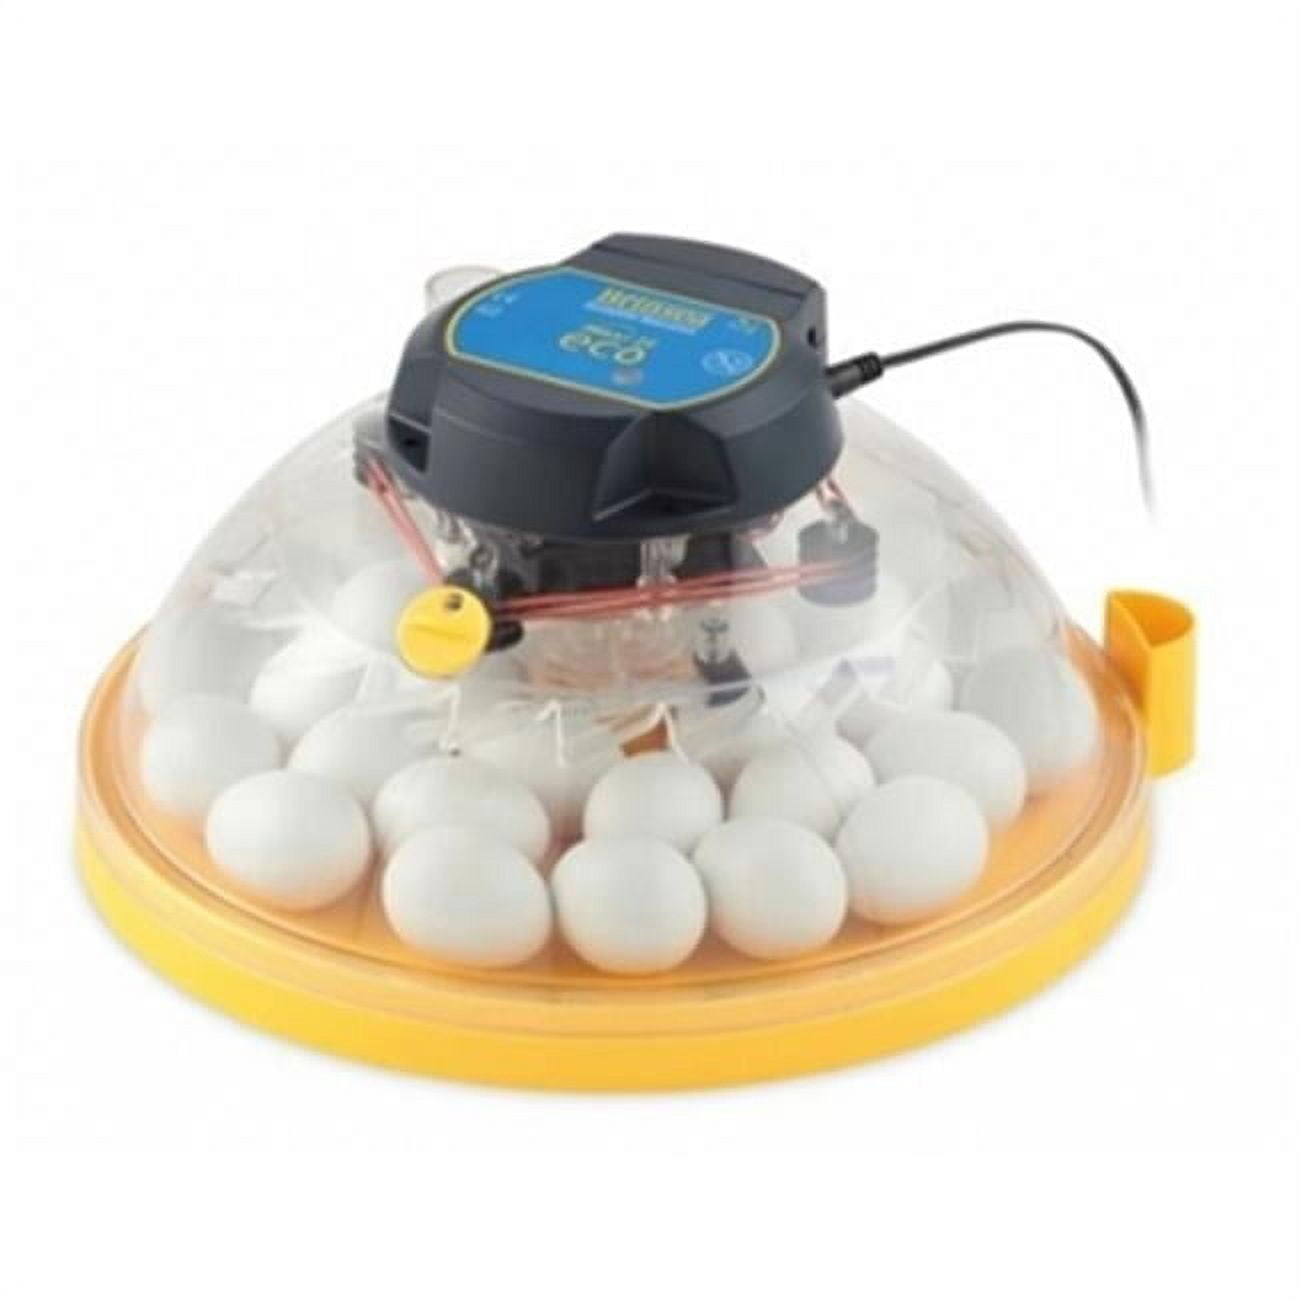 Brinsea Products Usac25c Maxi Ii Eco Manual 30 Egg Incubator